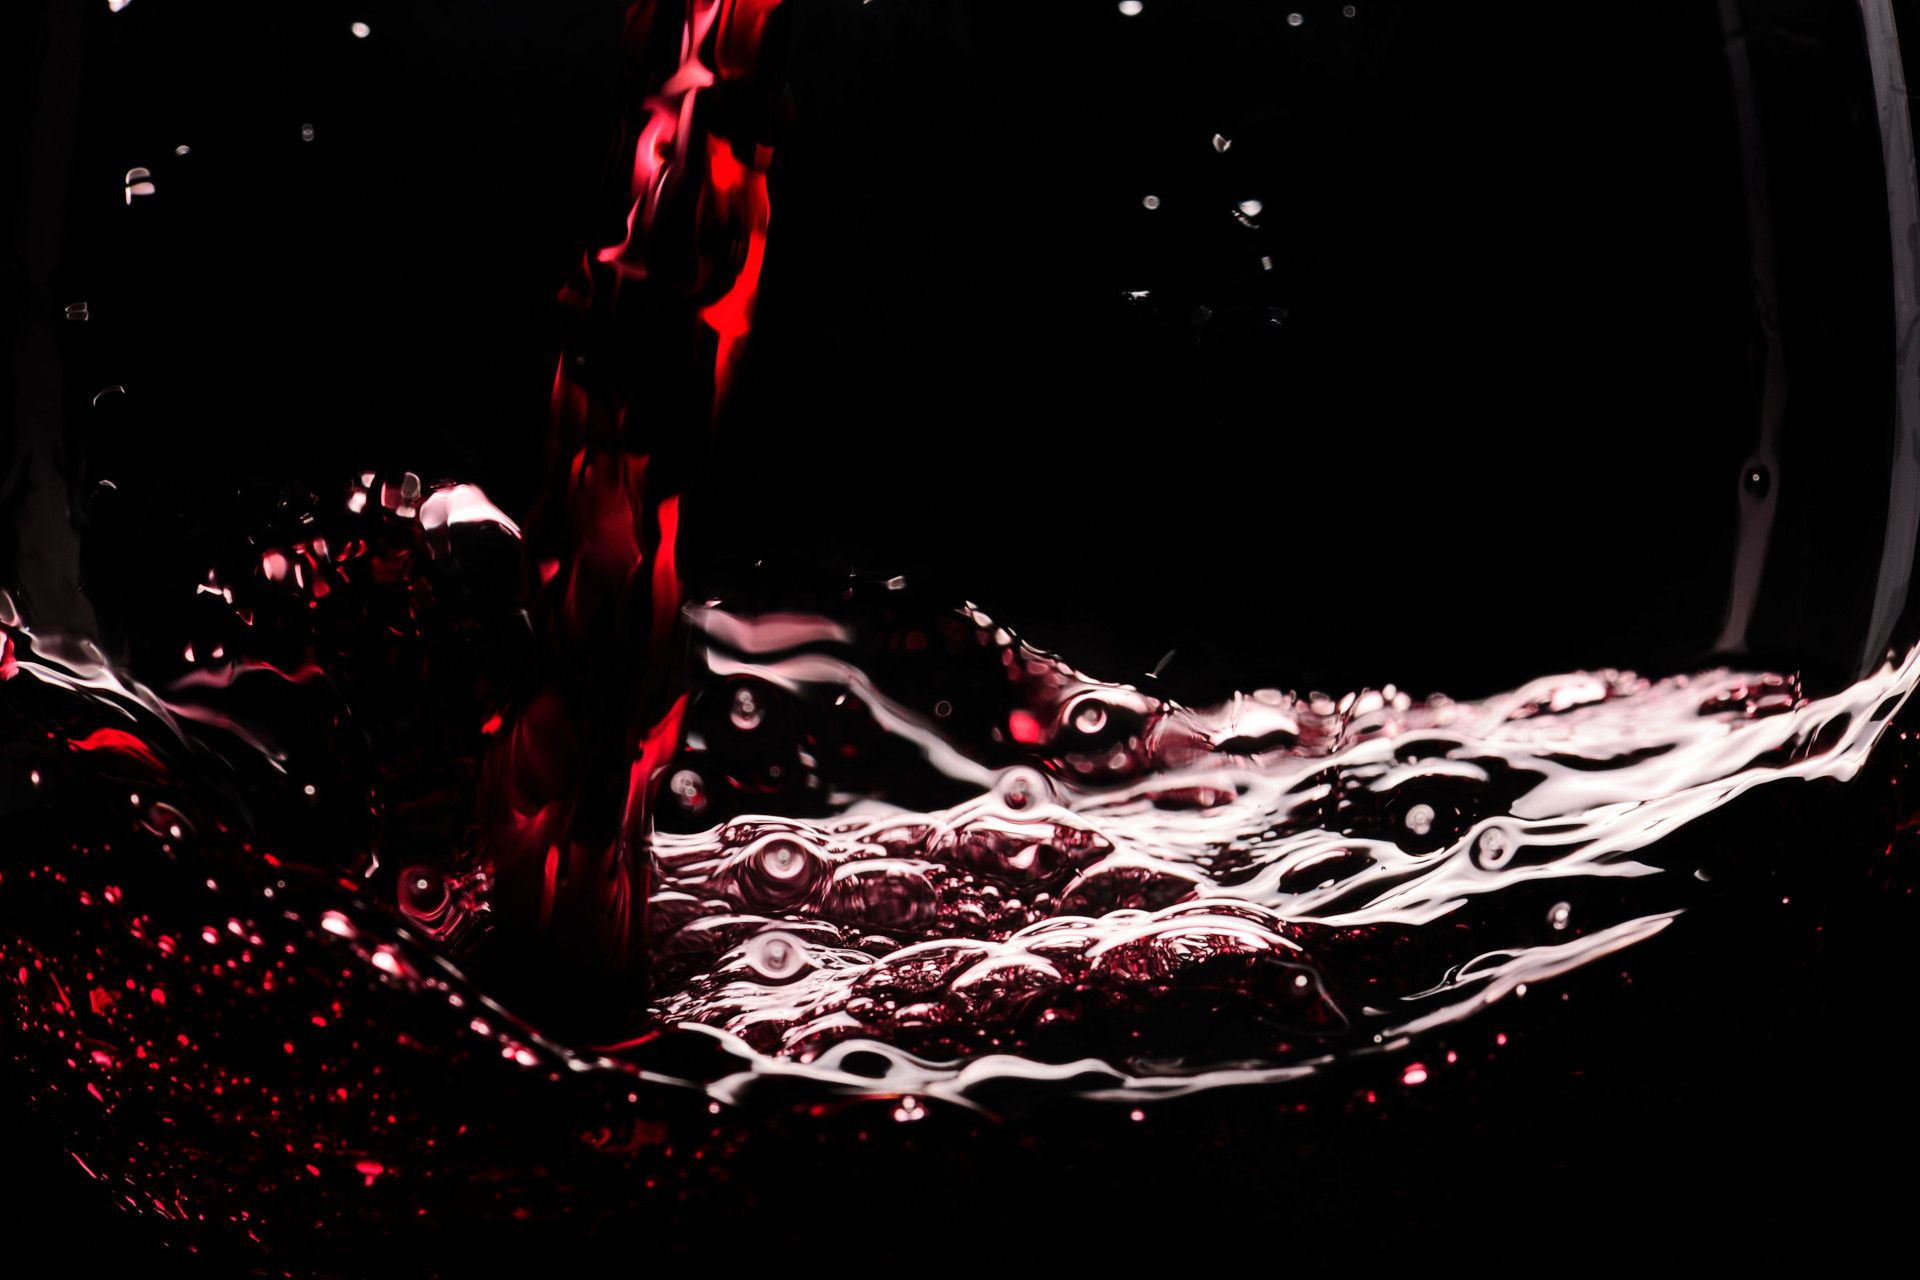 vino rosso Montepulciano D'Abruzzo durante la caduta del bicchiere del Ristorante La Tacchinella di Canzano a Teramo in Abruzzo